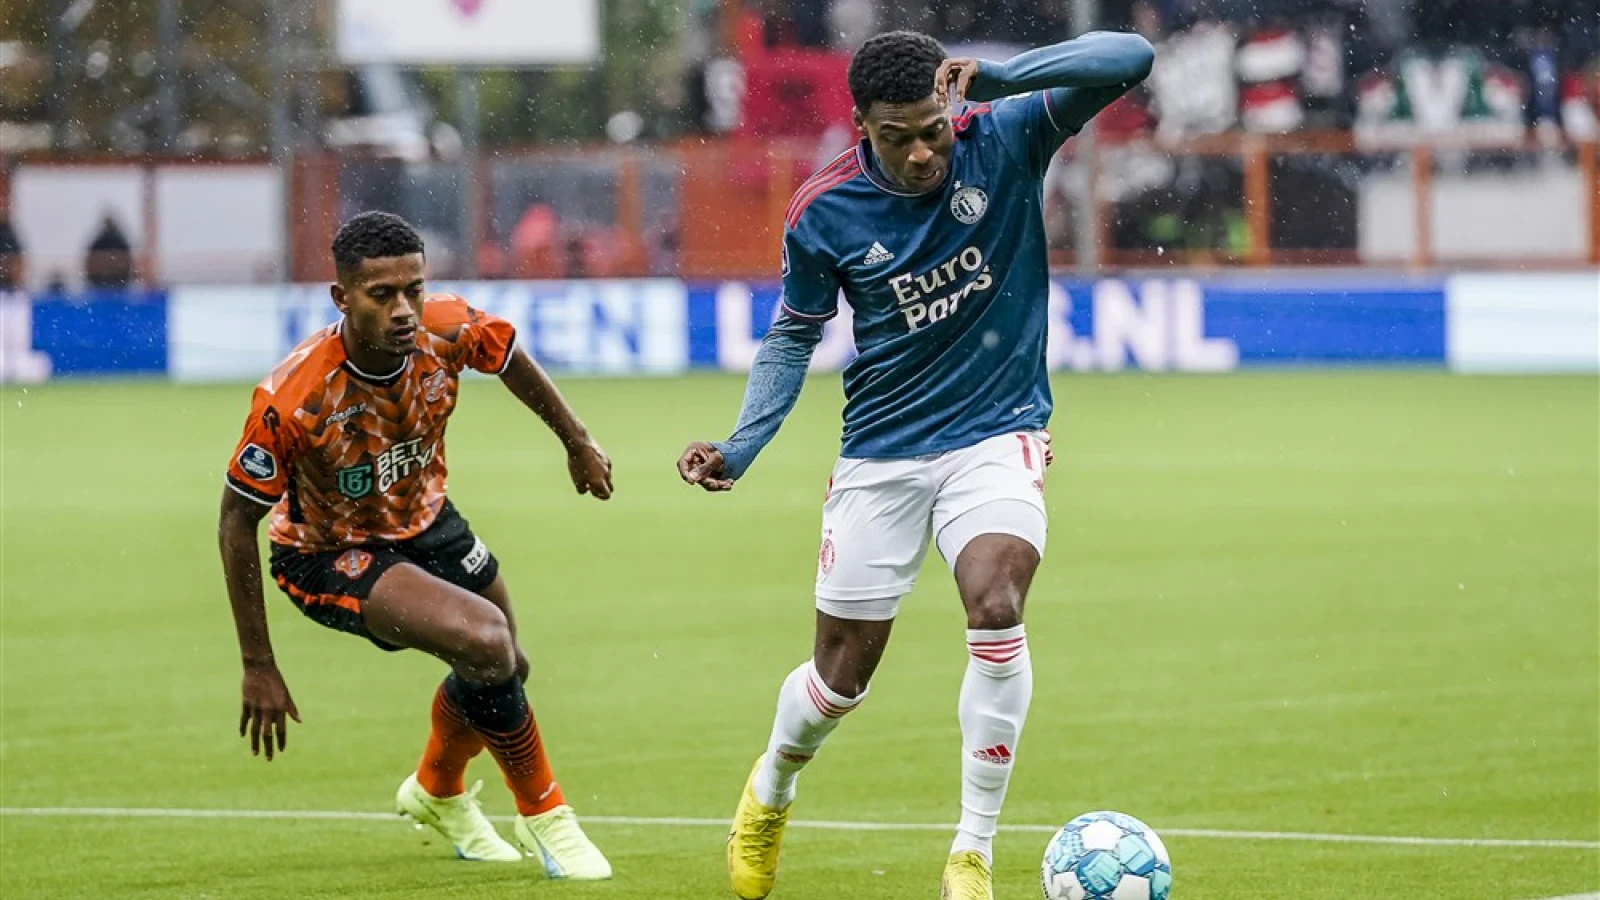 LIVE | FC Volendam - Feyenoord 0-2 | Einde wedstrijd